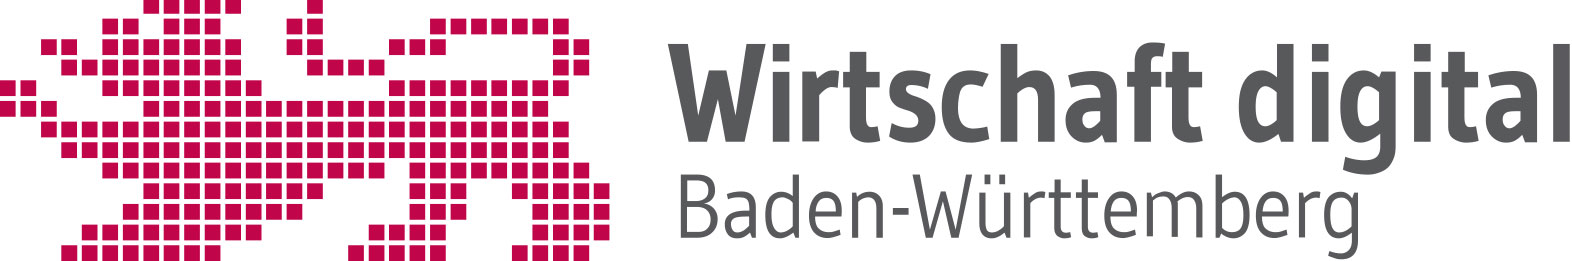 Wirtschaft digital Baden-Württemberg